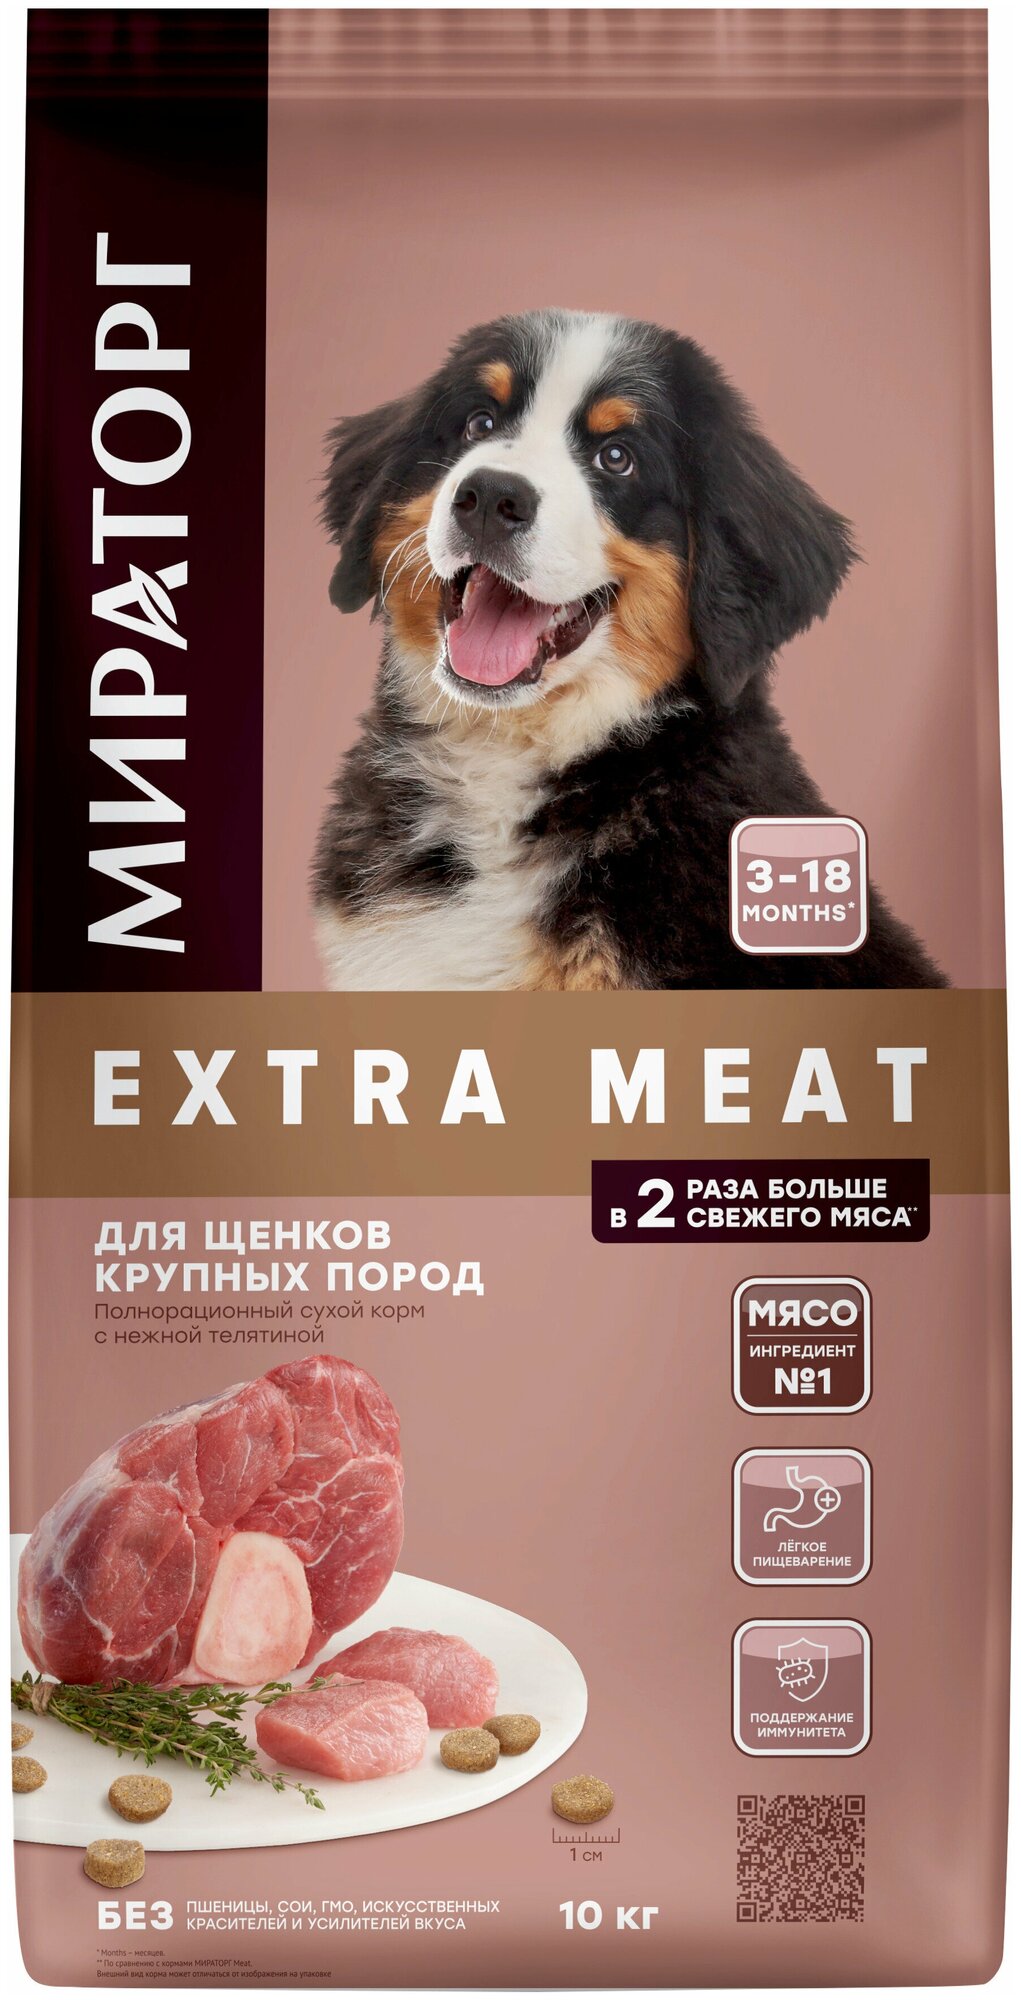 Полнорационный сухой корм мираторг EXTRA MEAT c нежной телятиной для щенков  крупных пород в возрасте от 3 до 18 месяцев 10 кг — купить в  интернет-магазине по низкой цене на Яндекс Маркете